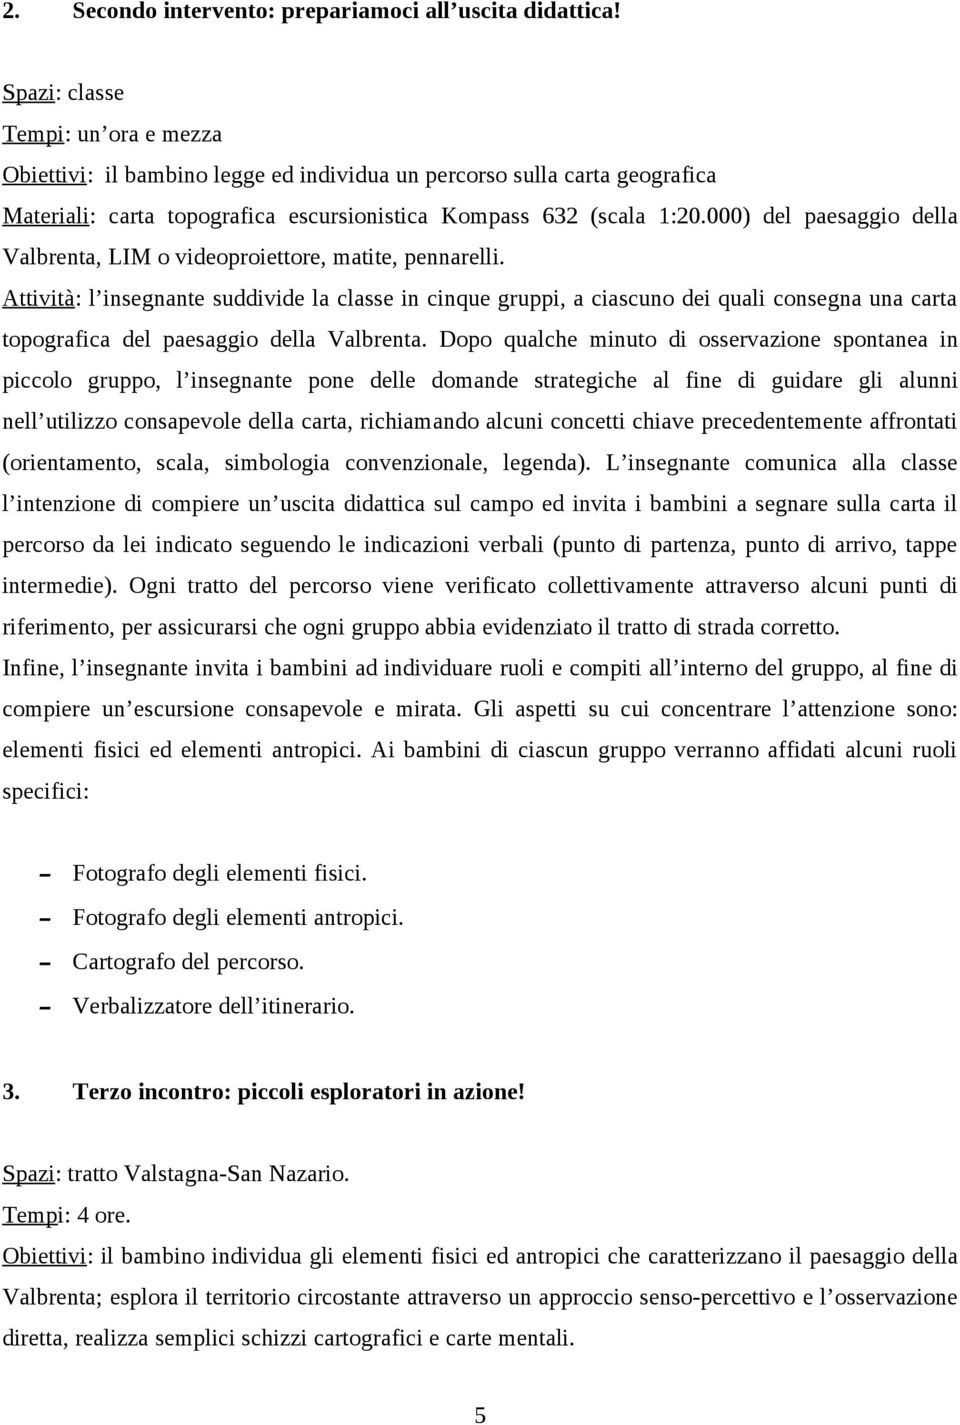 000) del paesaggio della Valbrenta, LIM o videoproiettore, matite, pennarelli.